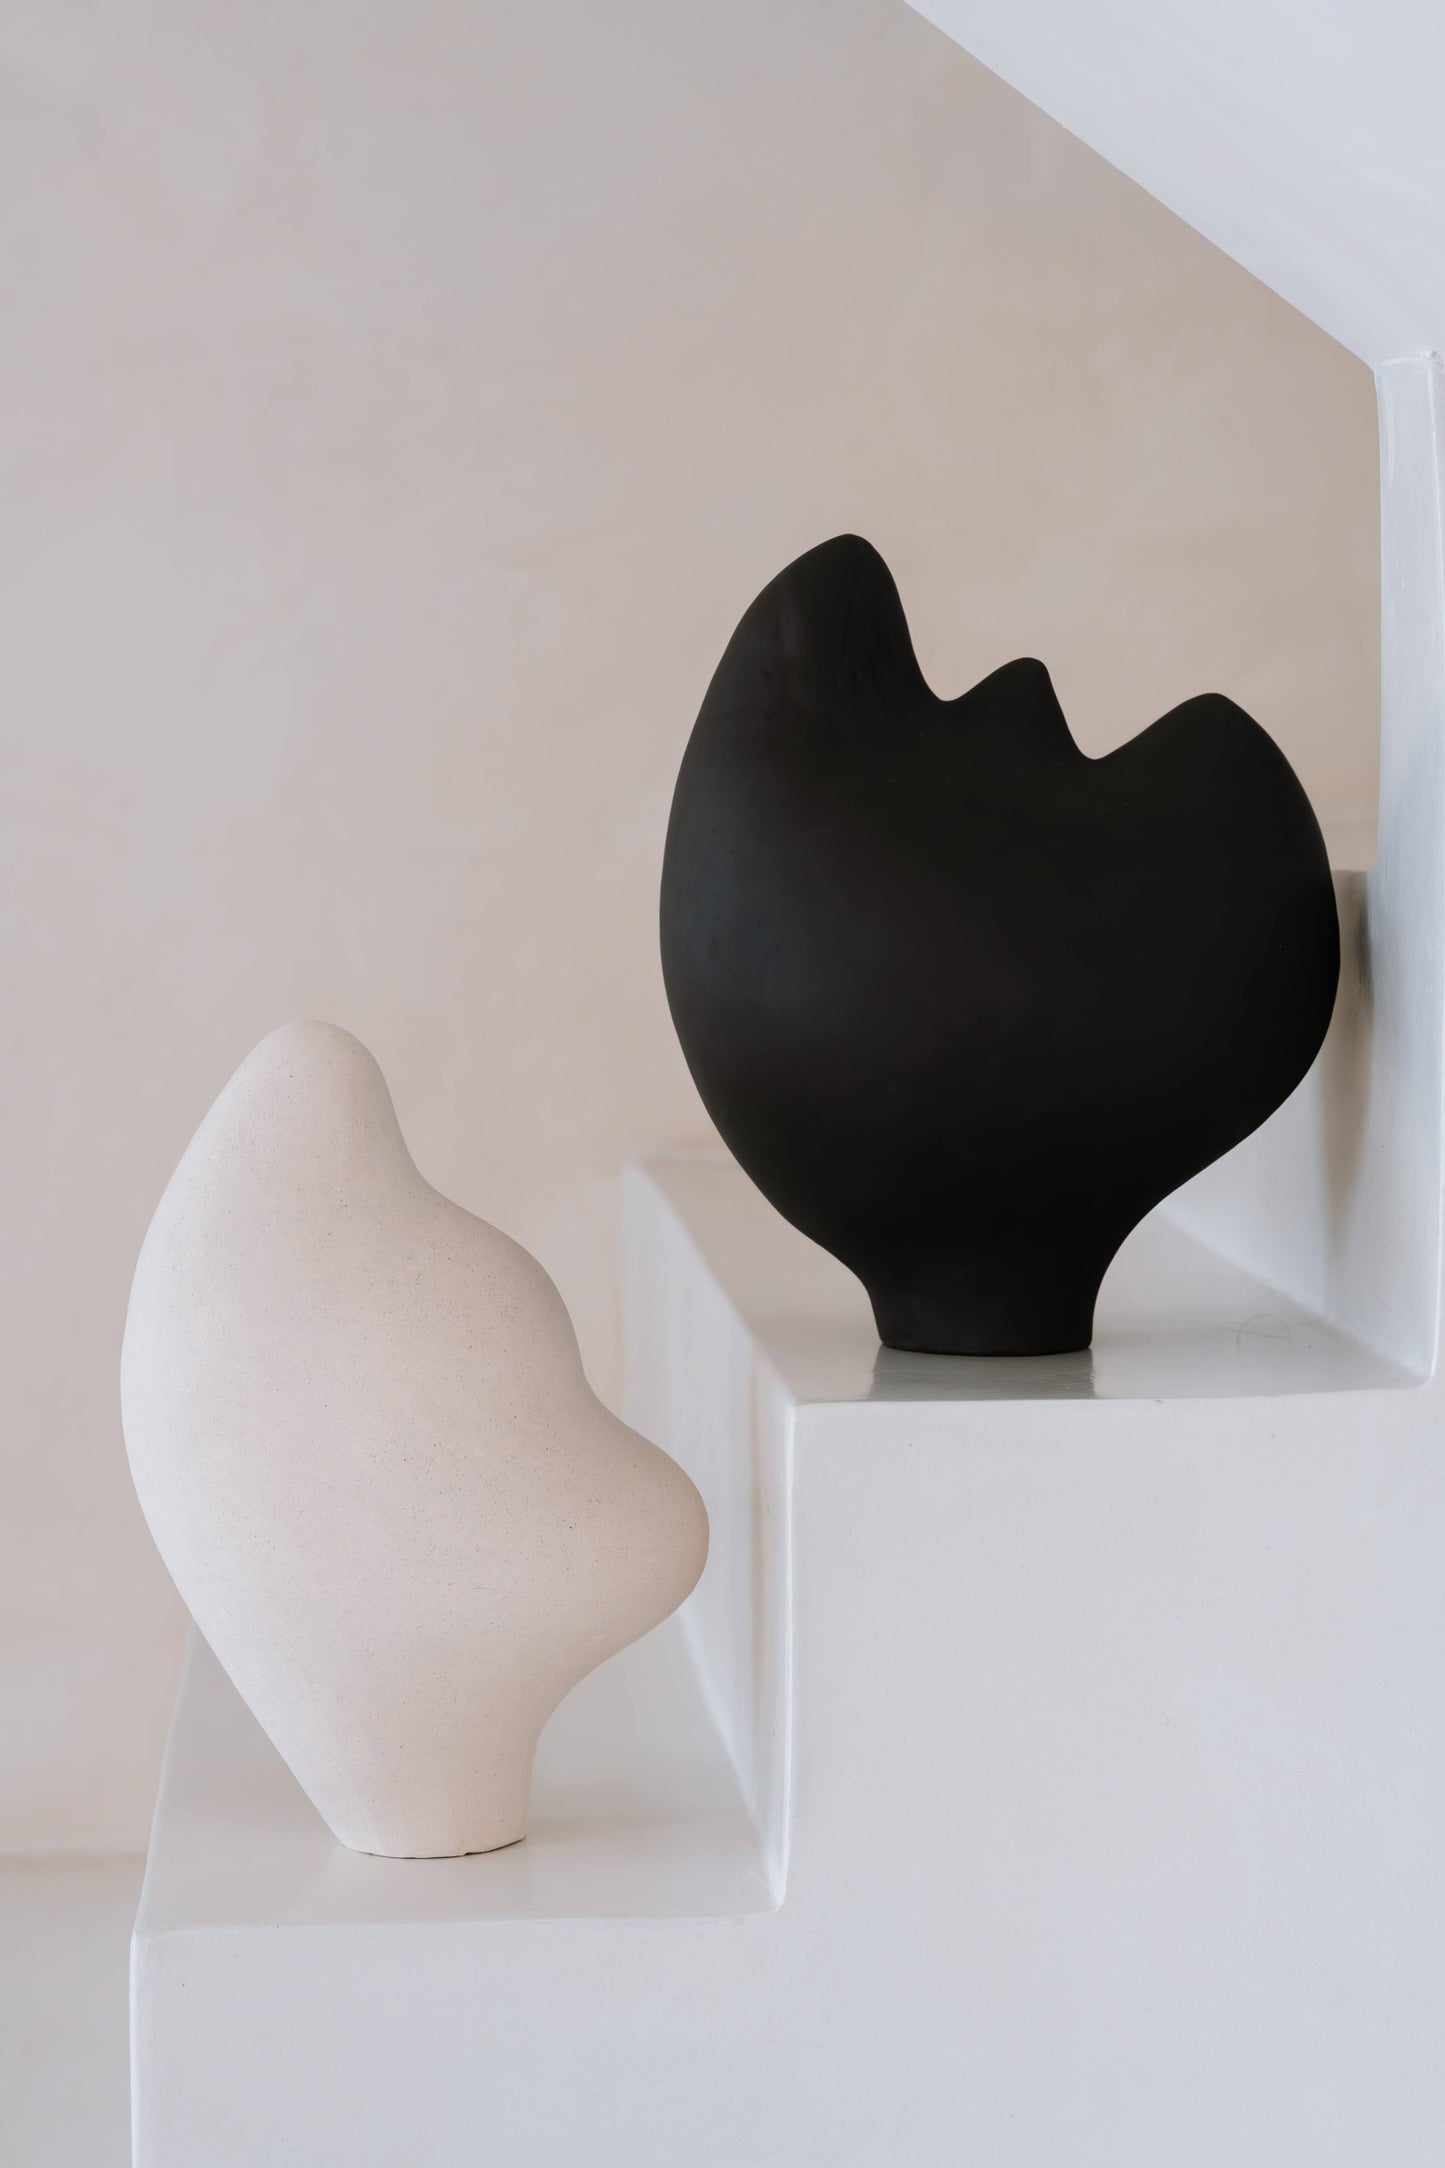 Olga Iacovlenco / White Sculpture